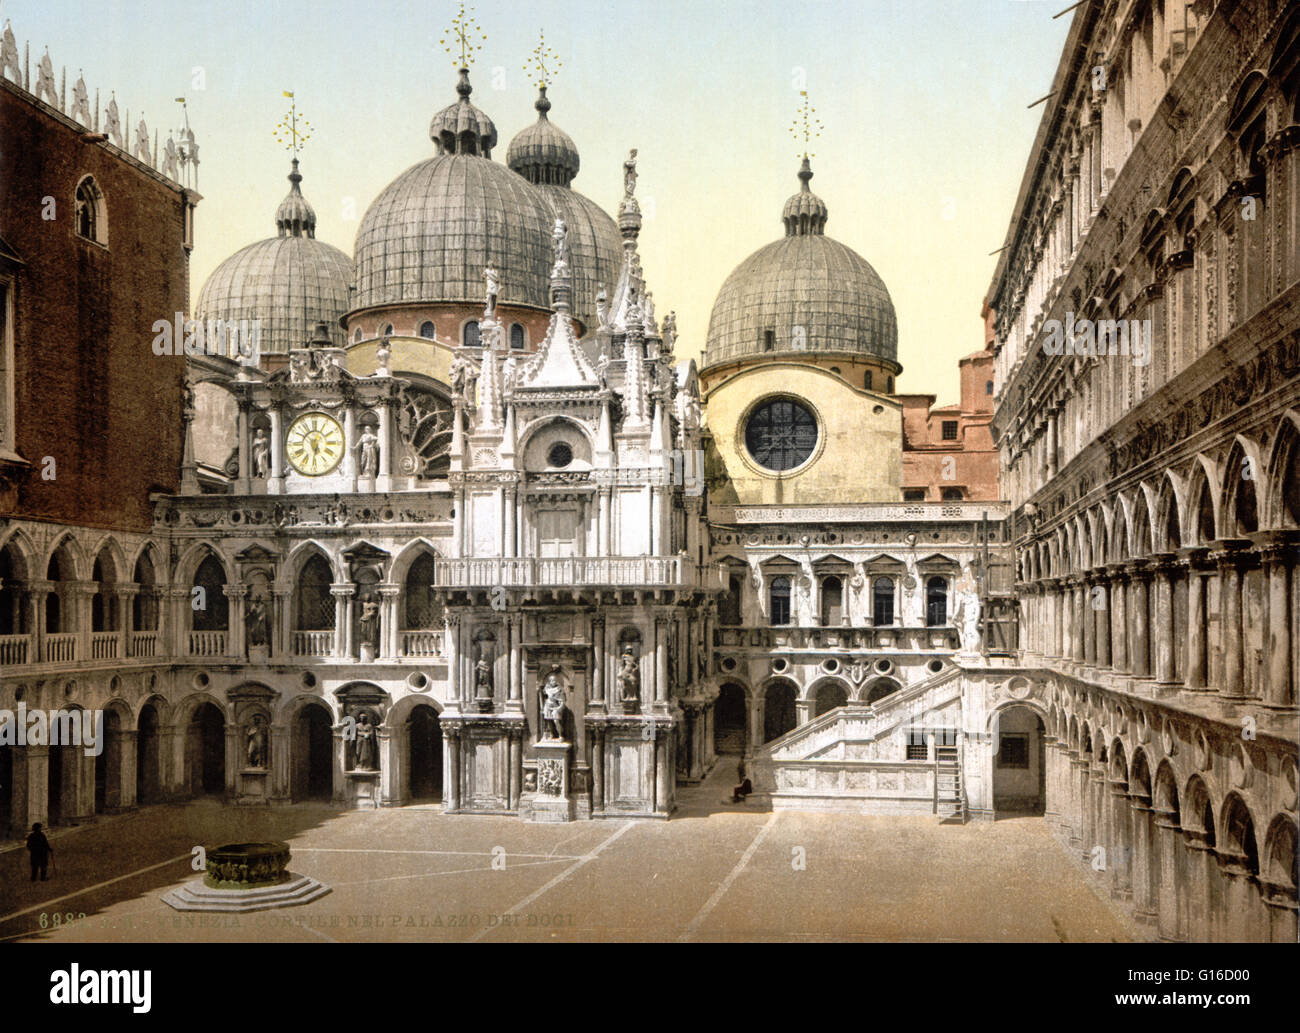 Le doge's Palace est un palais construit en style gothique vénitien, et l'un des principaux monuments de la ville de Venise. La partie la plus ancienne du palais est la façade donnant sur la lagune, les coins sont décorés de sculptures du 14ème siècle par Filip Banque D'Images